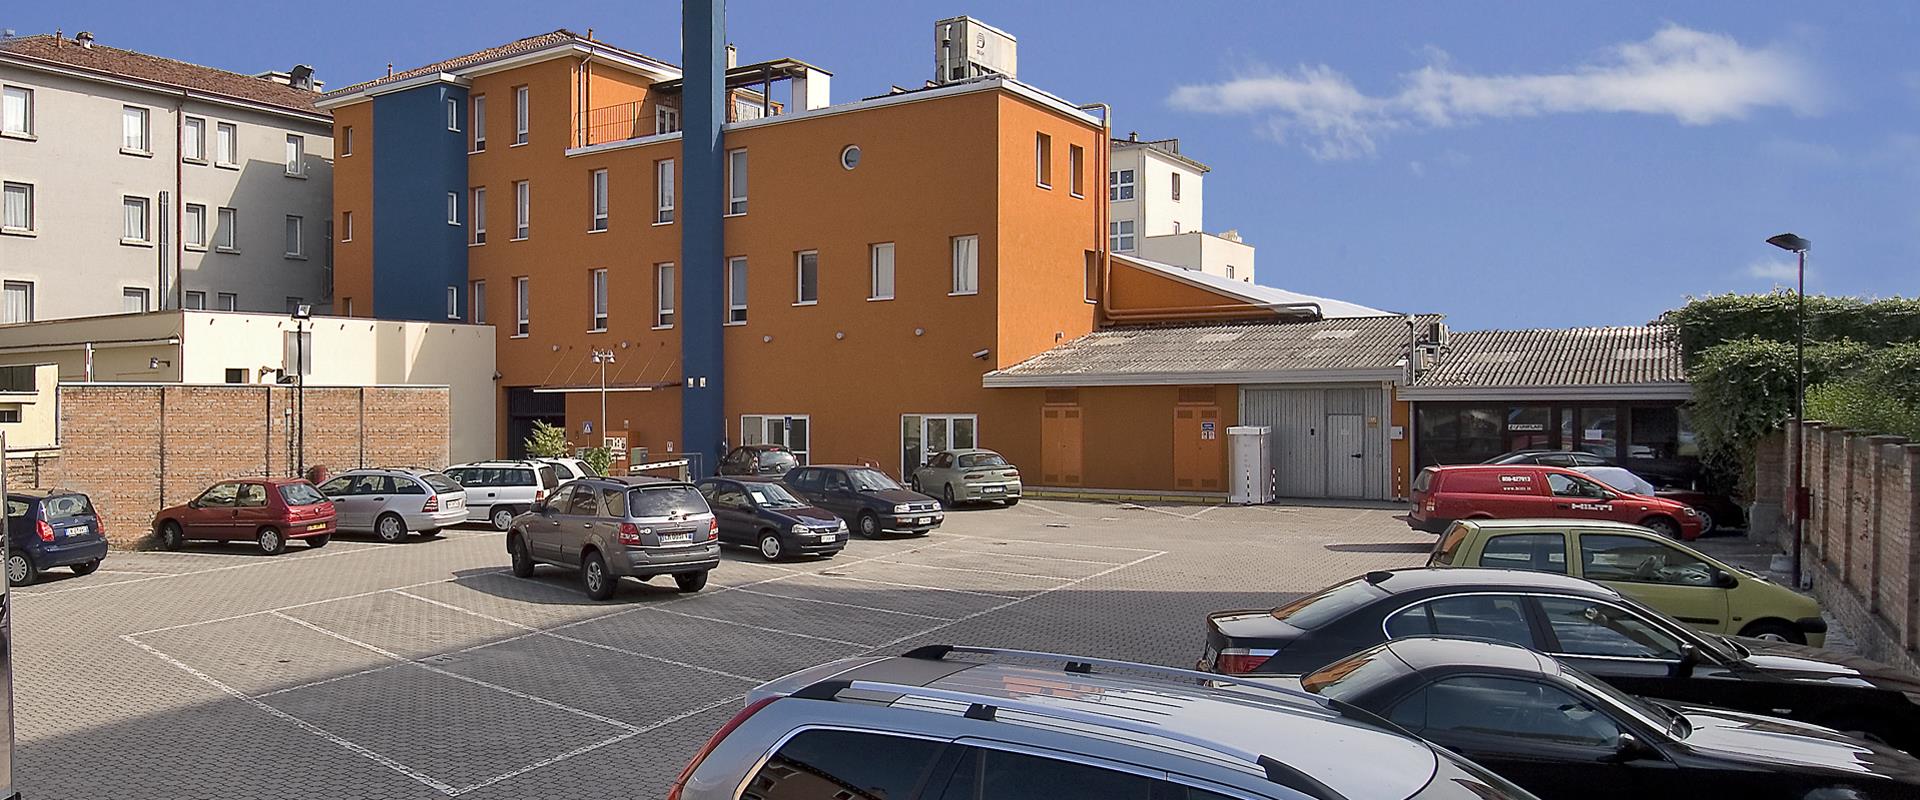 Dimentica l''auto e muoviti a Venezia in libertà! Il parcheggio del Best Western Plus Hotel Bologna a Mestre è videosorvegliato.